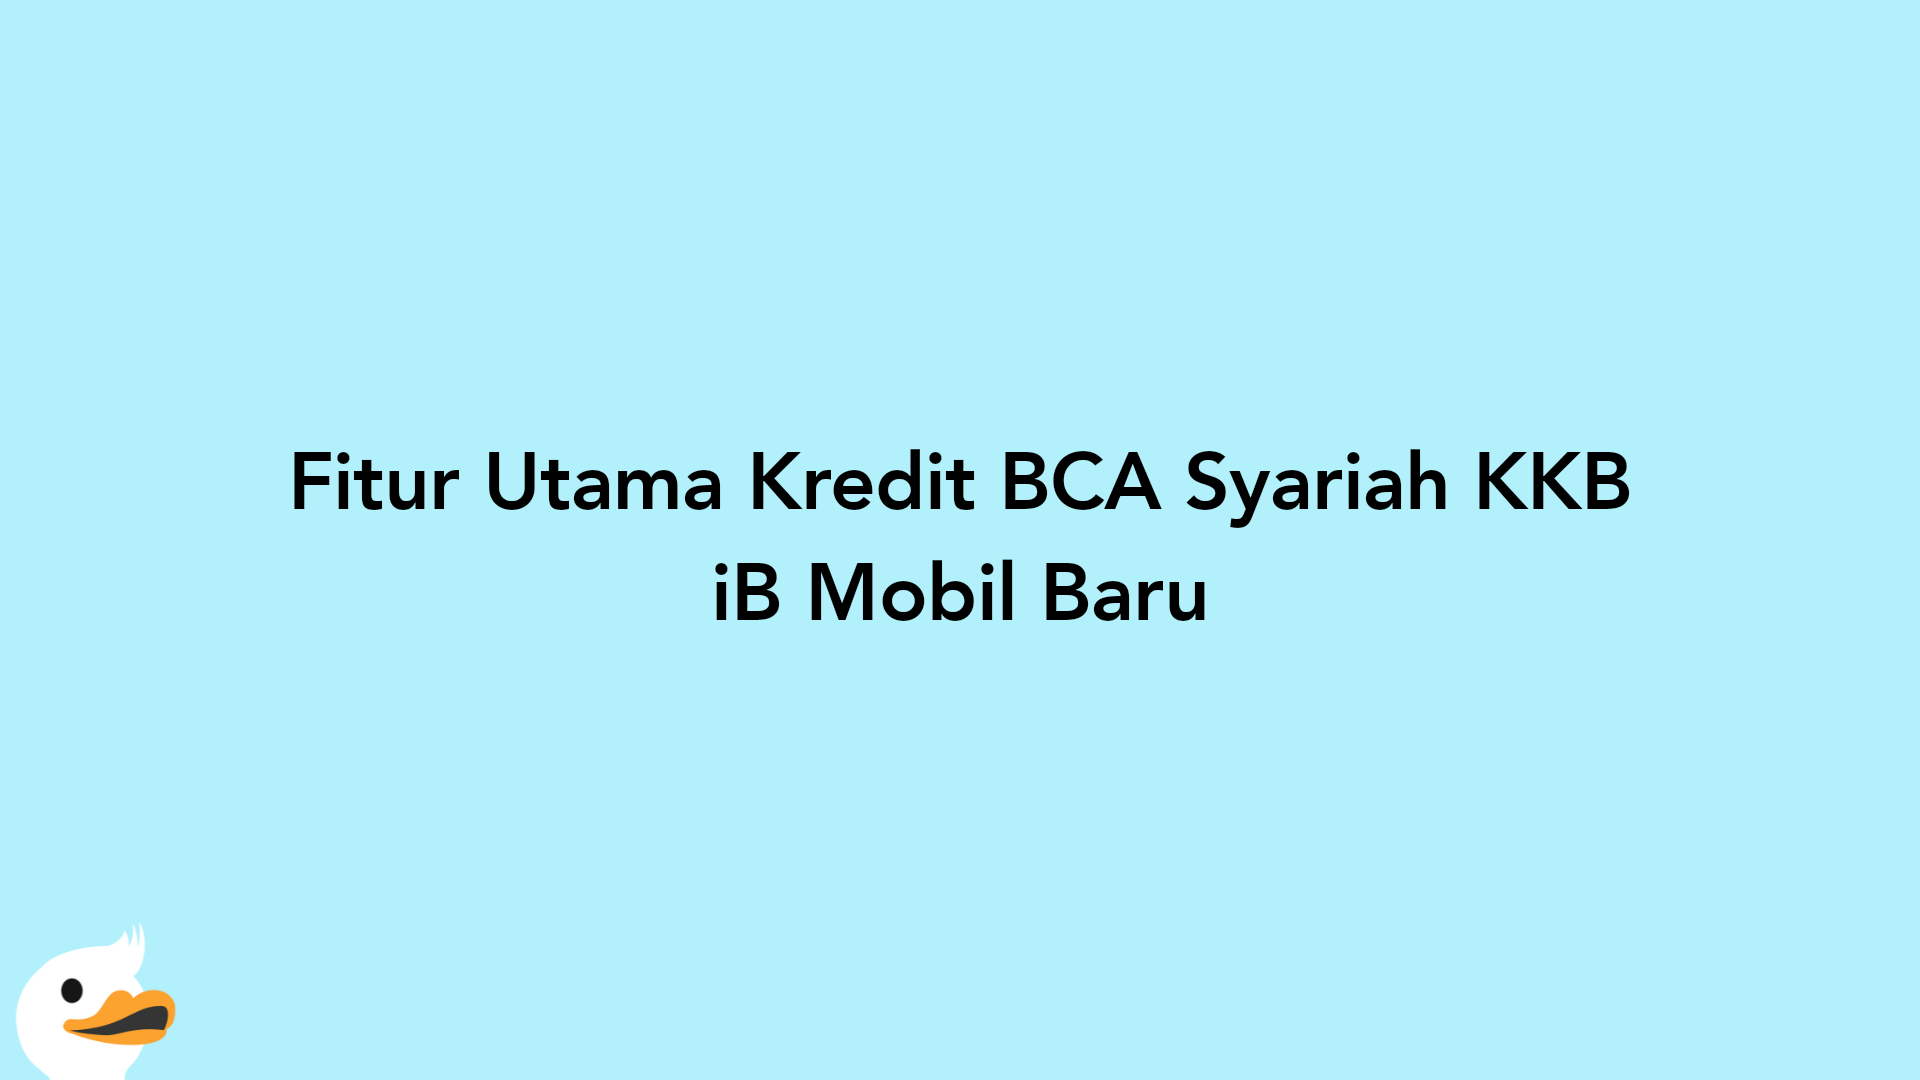 Fitur Utama Kredit BCA Syariah KKB iB Mobil Baru